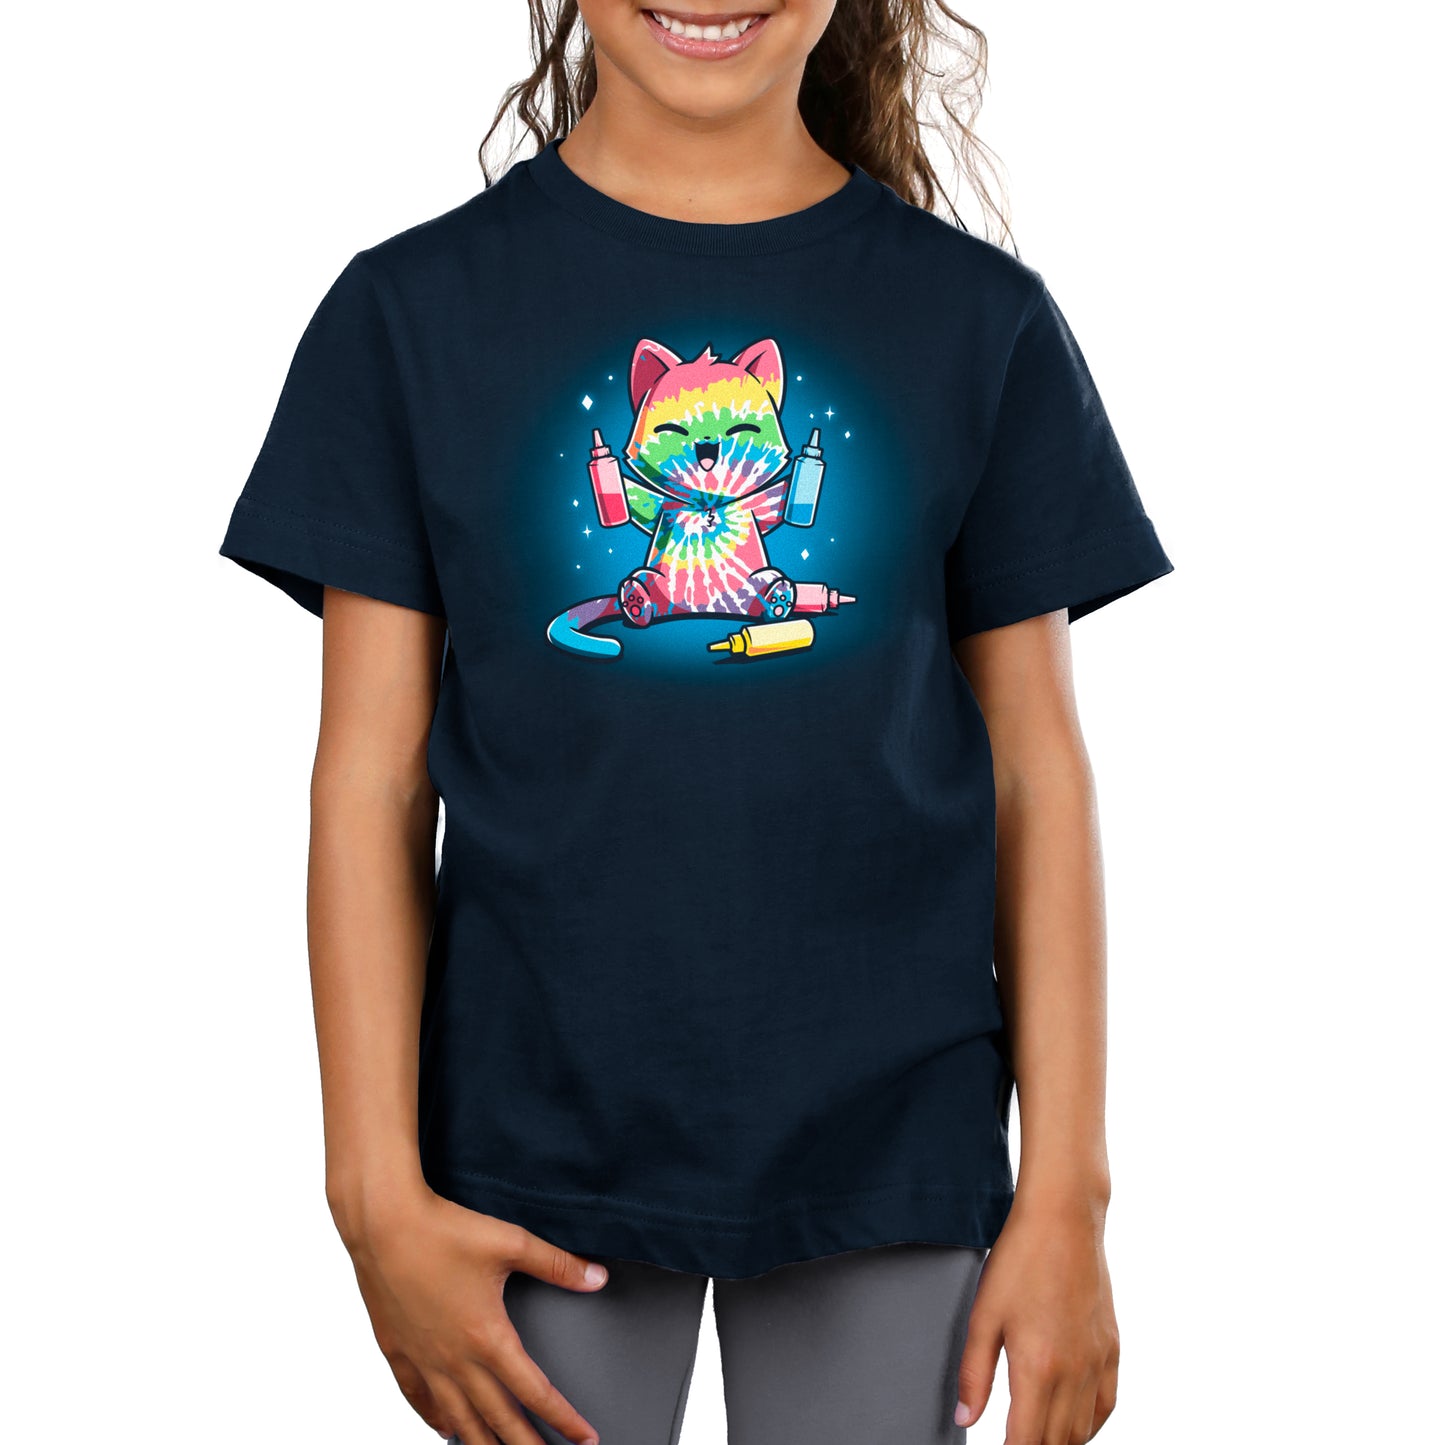 A girl wearing a TeeTurtle Tie-Dye Cat t-shirt.